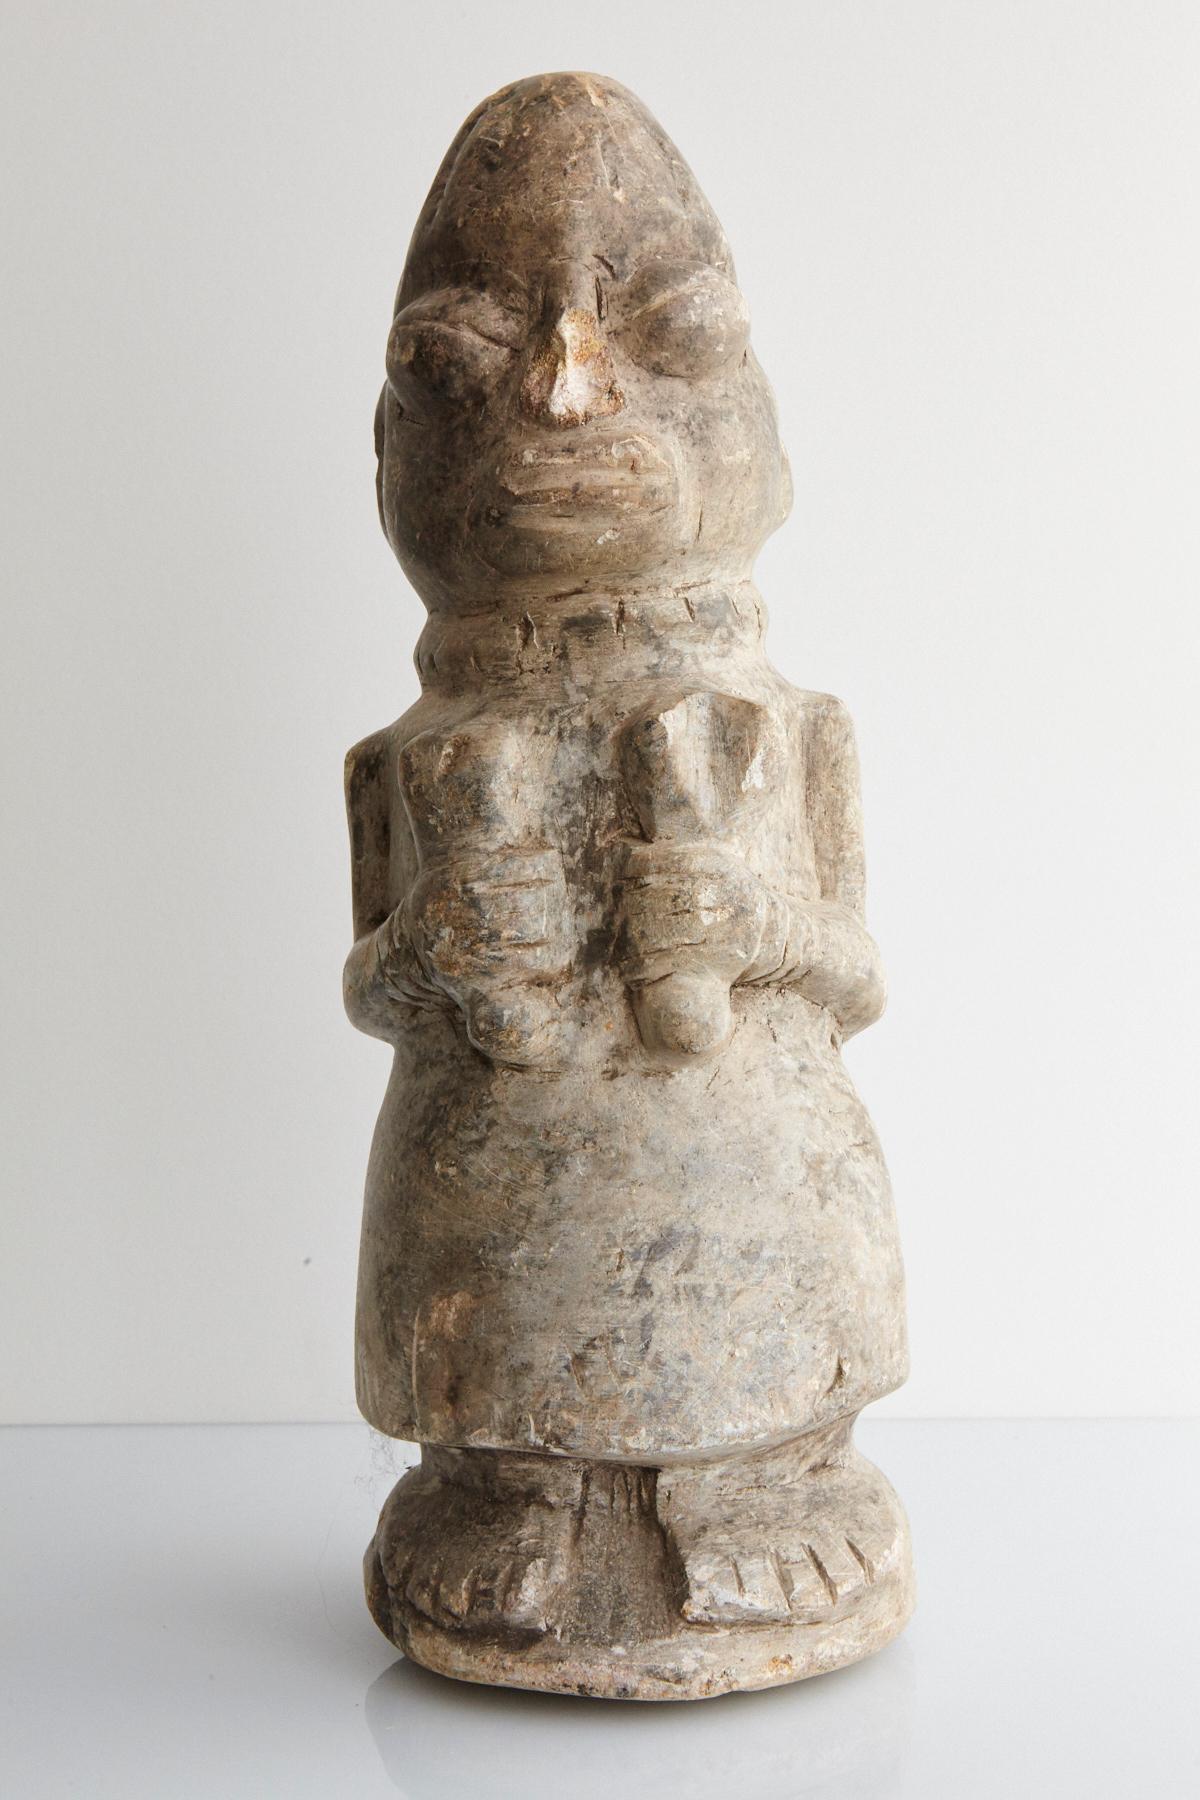 Ein Nomoli ist eine aus Stein gehauene Figur, die in Sierra Leone und Liberia heimisch ist. Sie werden in der Regel aus Speckstein, Kalkstein oder Granit hergestellt.

Die Schnitzerei stellt eine Frau in einem Kleid und einem Halsband dar, die